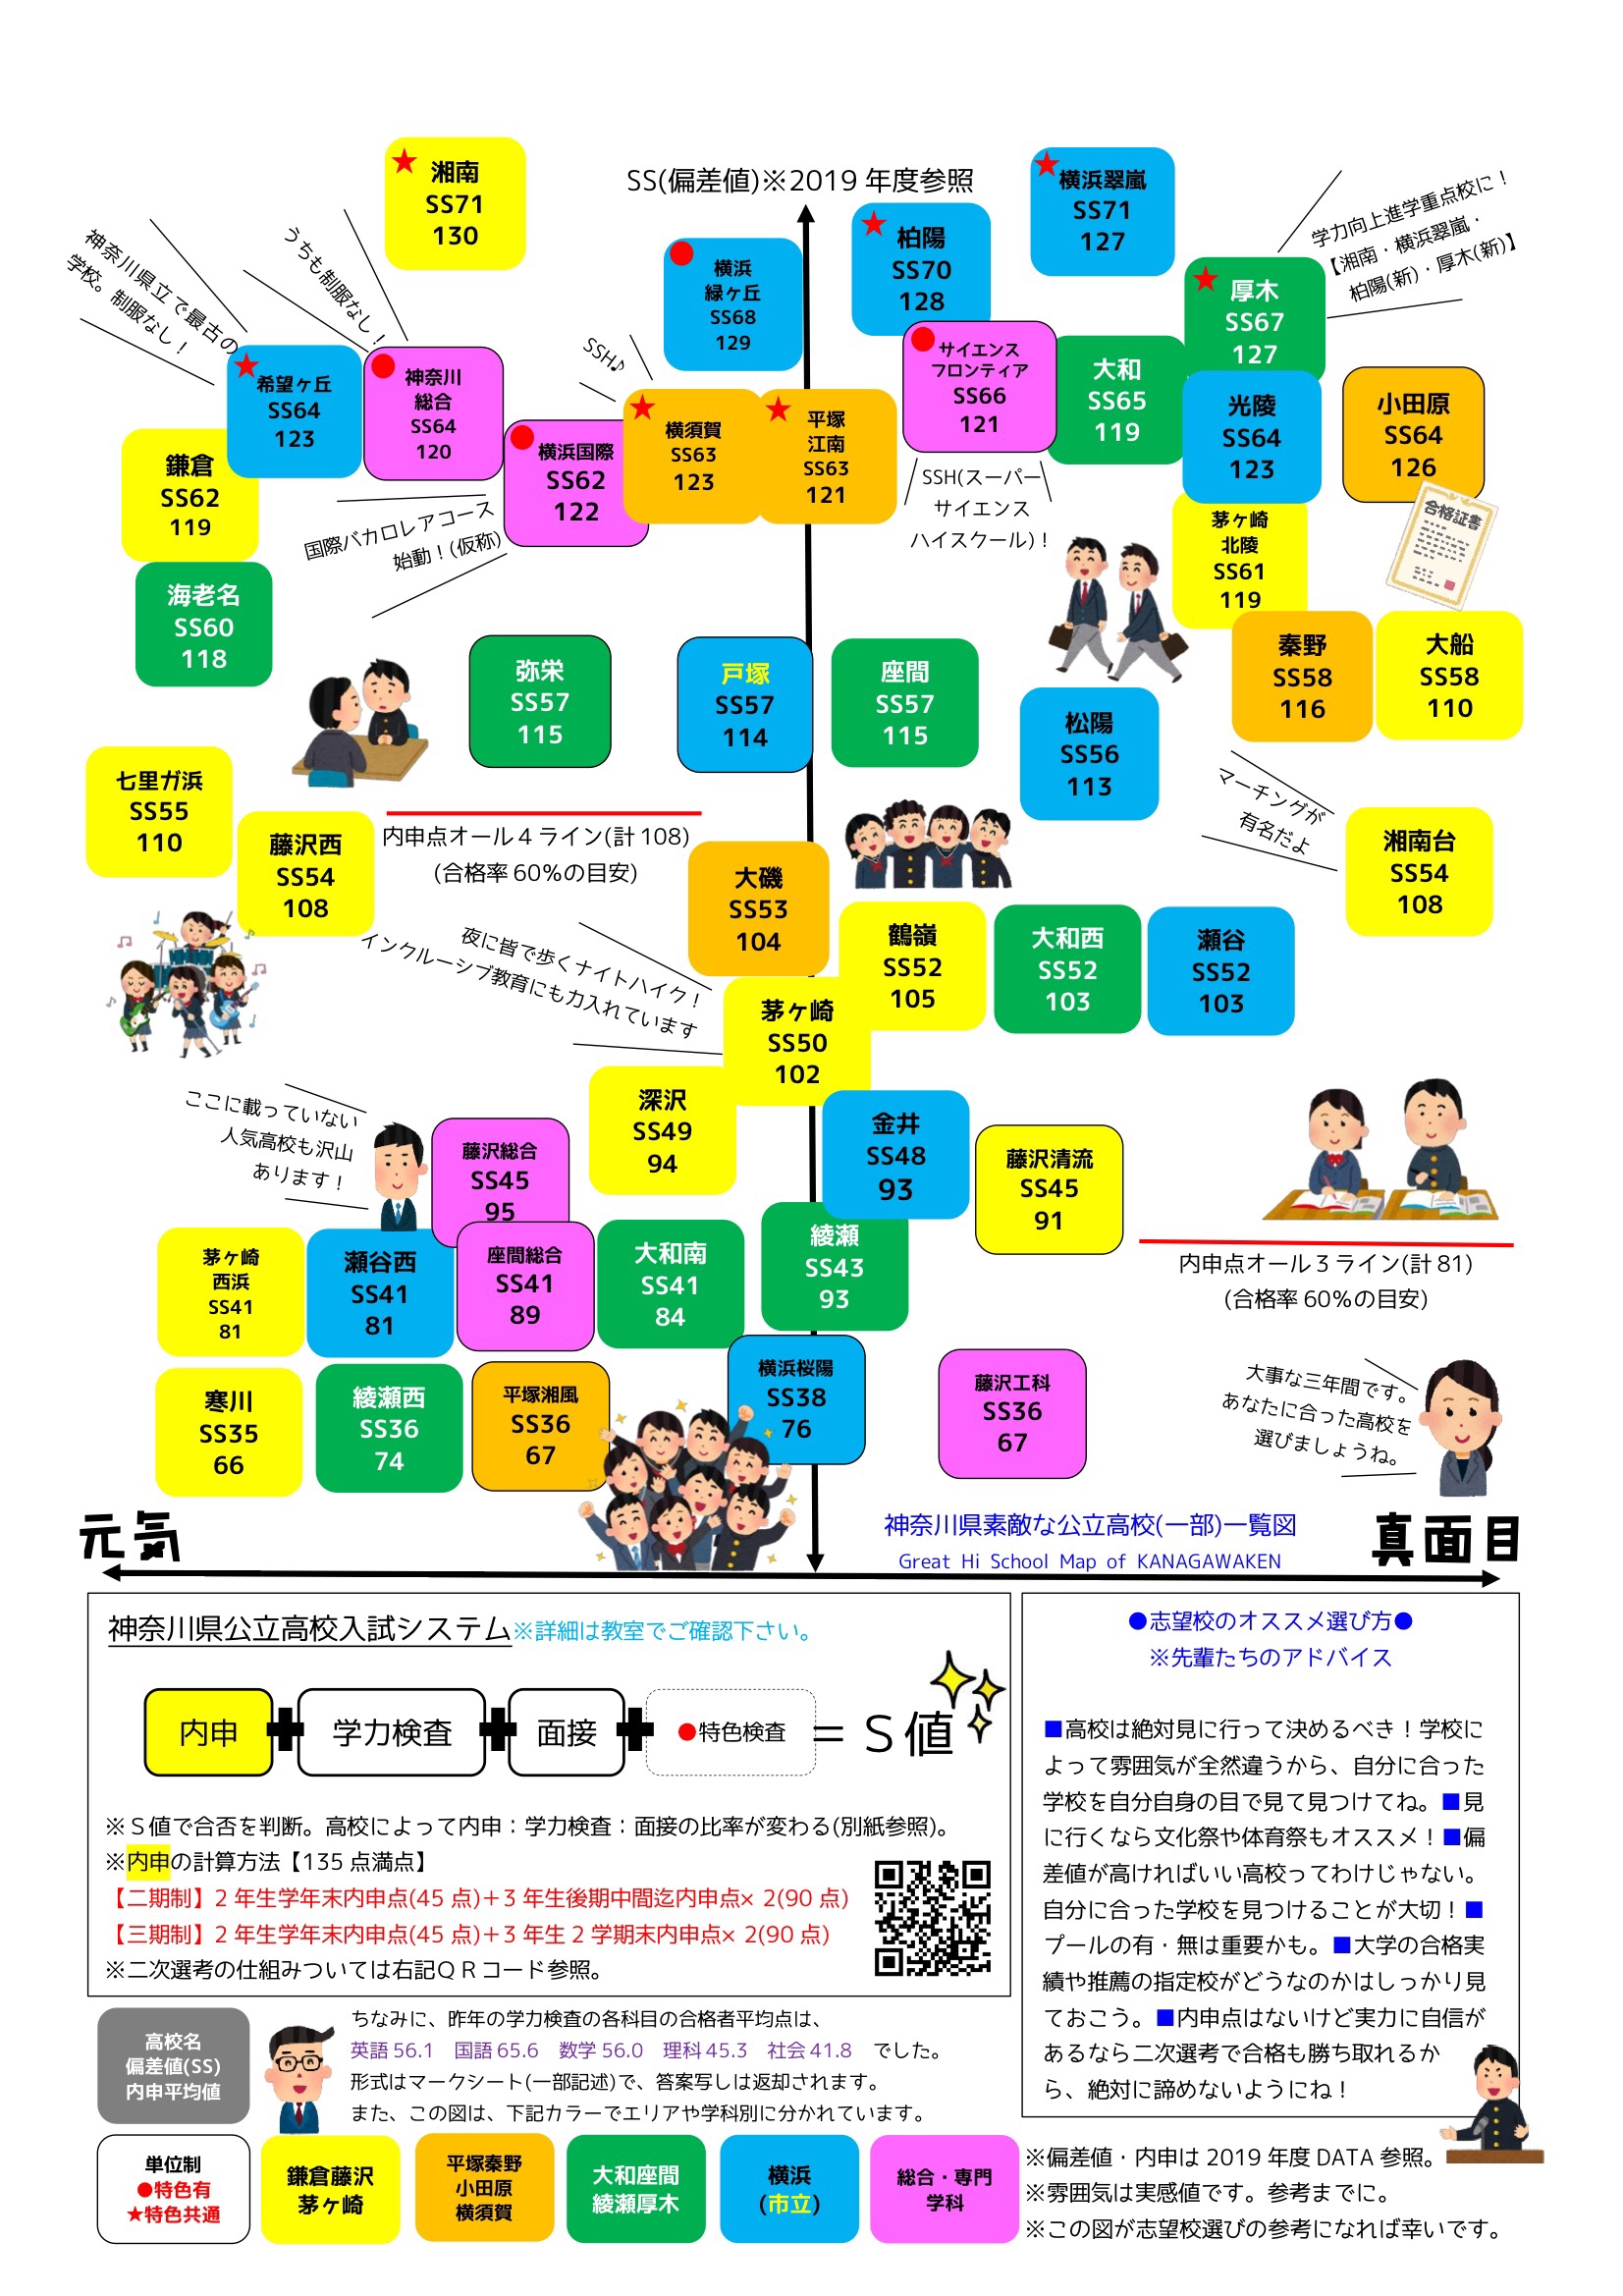 神奈川県公立高校合格可能性80 基準値について昨年との比較や感想を述べてみる 第二の家 ブログ 藤沢市の個別指導塾のお話